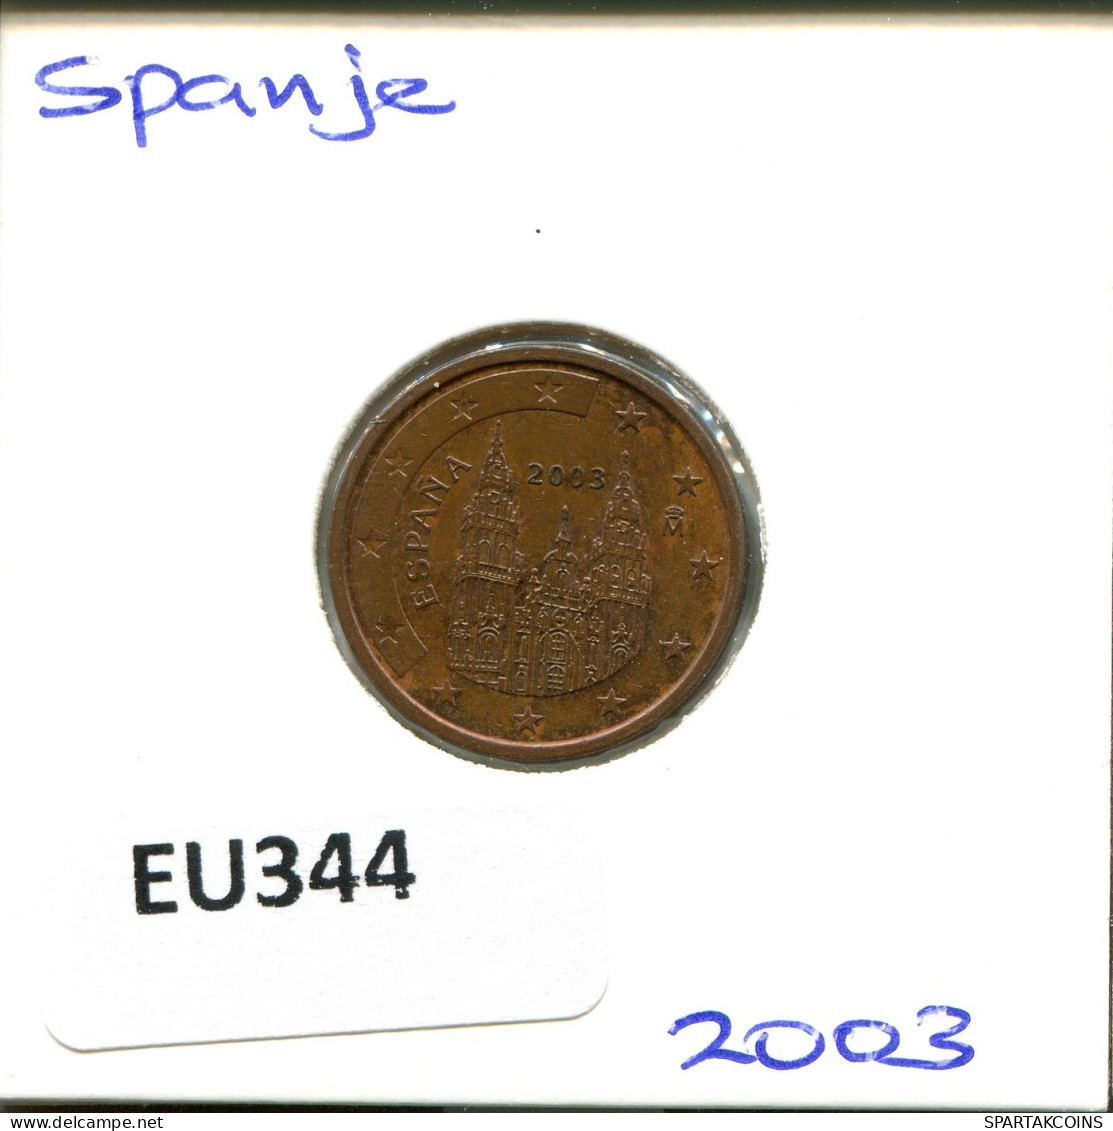 2 EURO CENTS 2003 SPAIN Coin #EU344.U.A - Spain